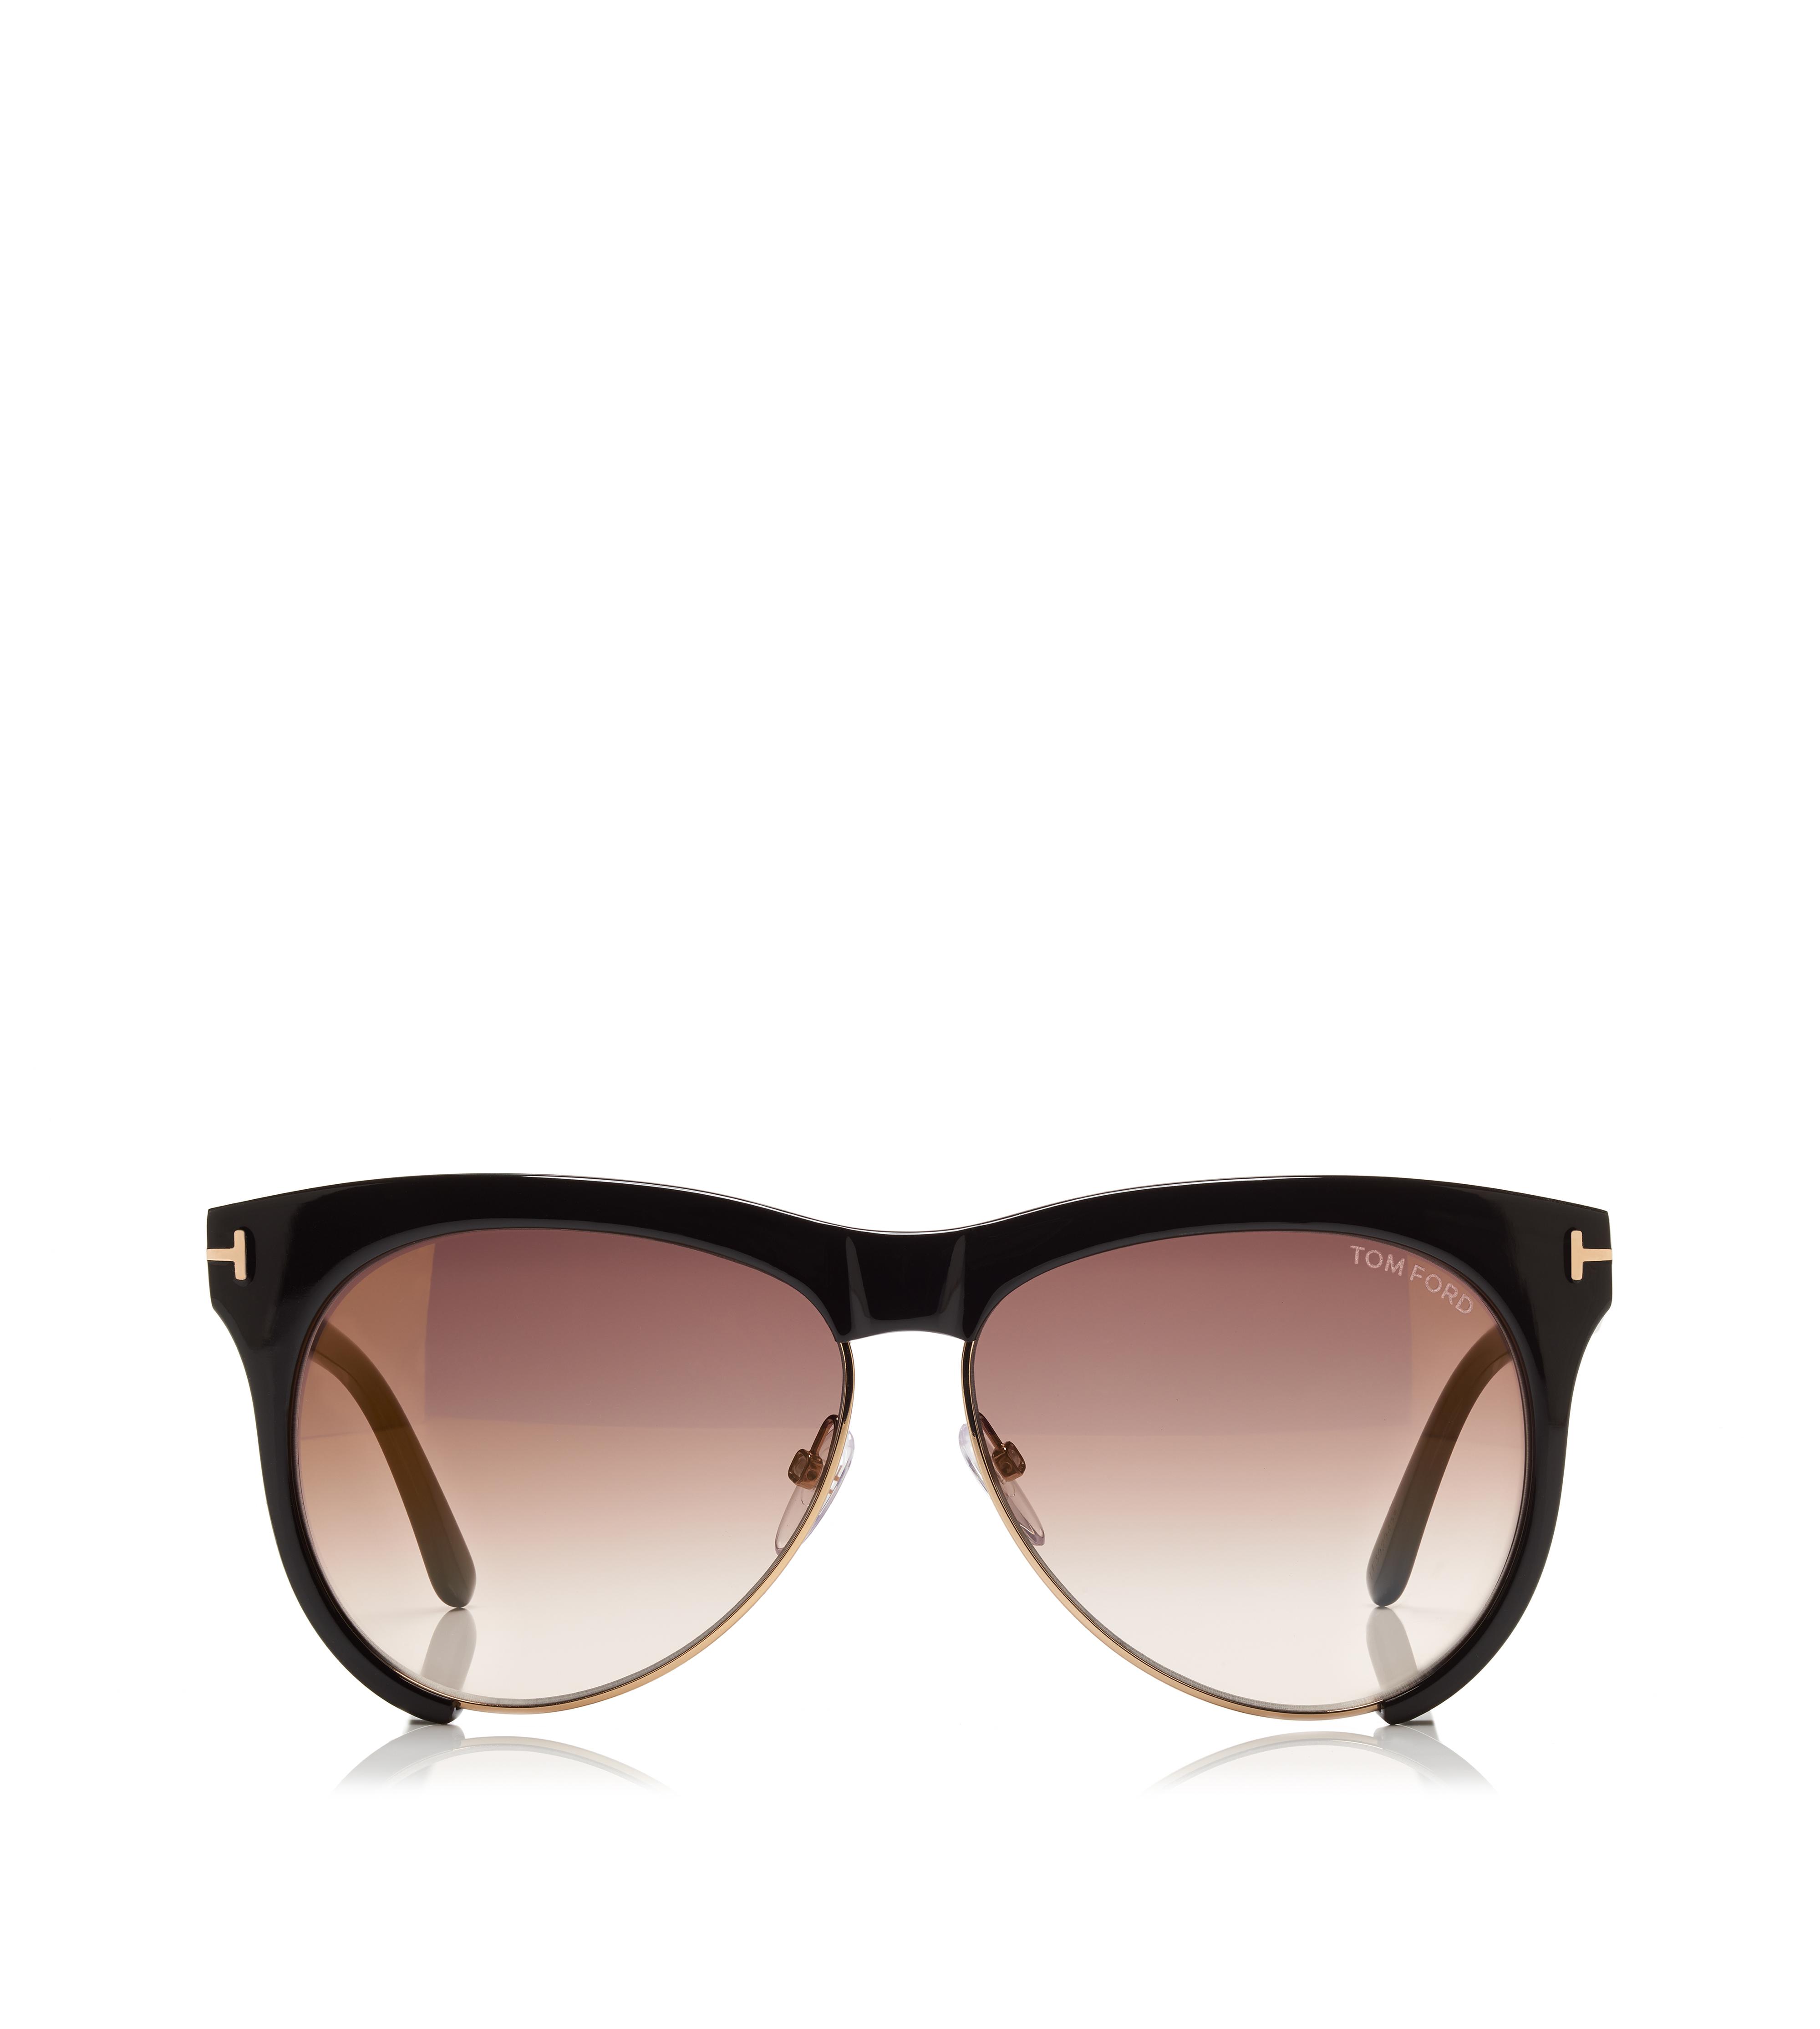 Designer Sunglasses for Women - Aviator Sunglasses | TOM FORD